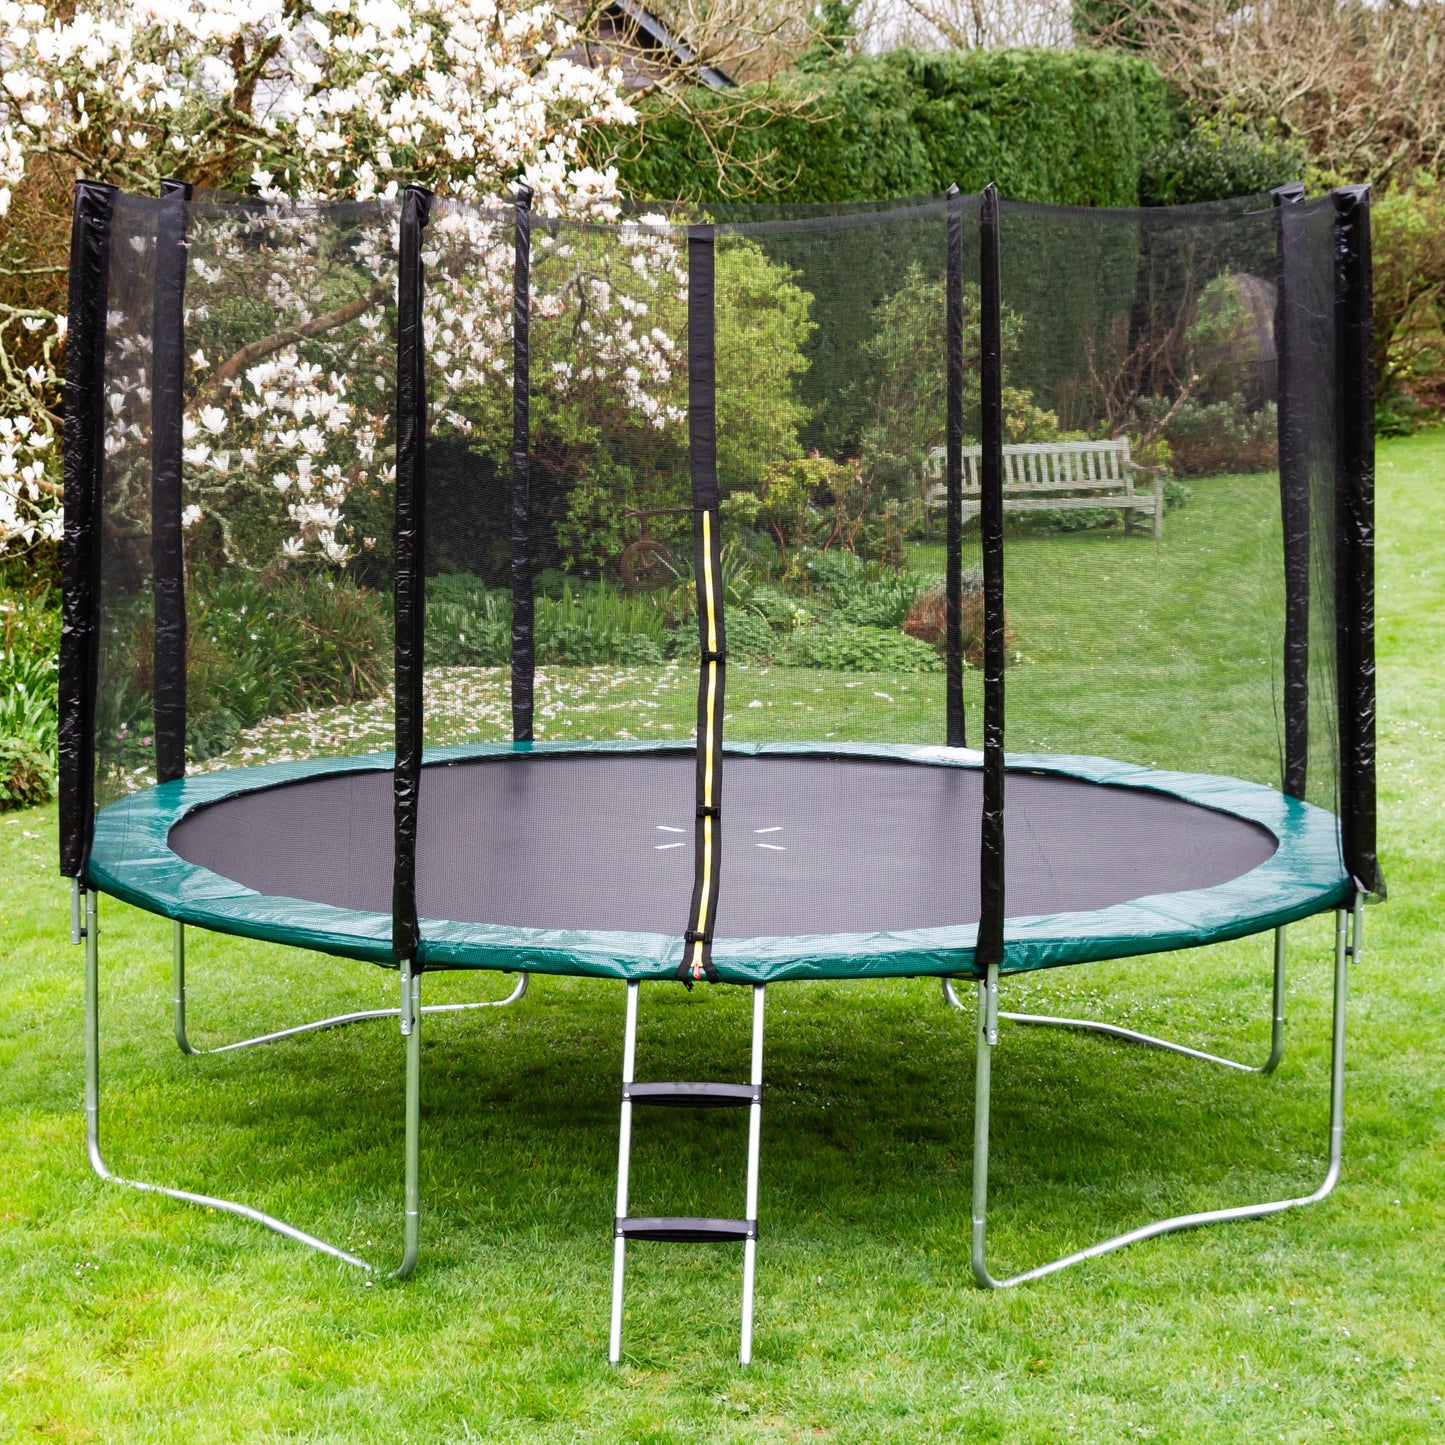 Kanga 12ft trampoline package